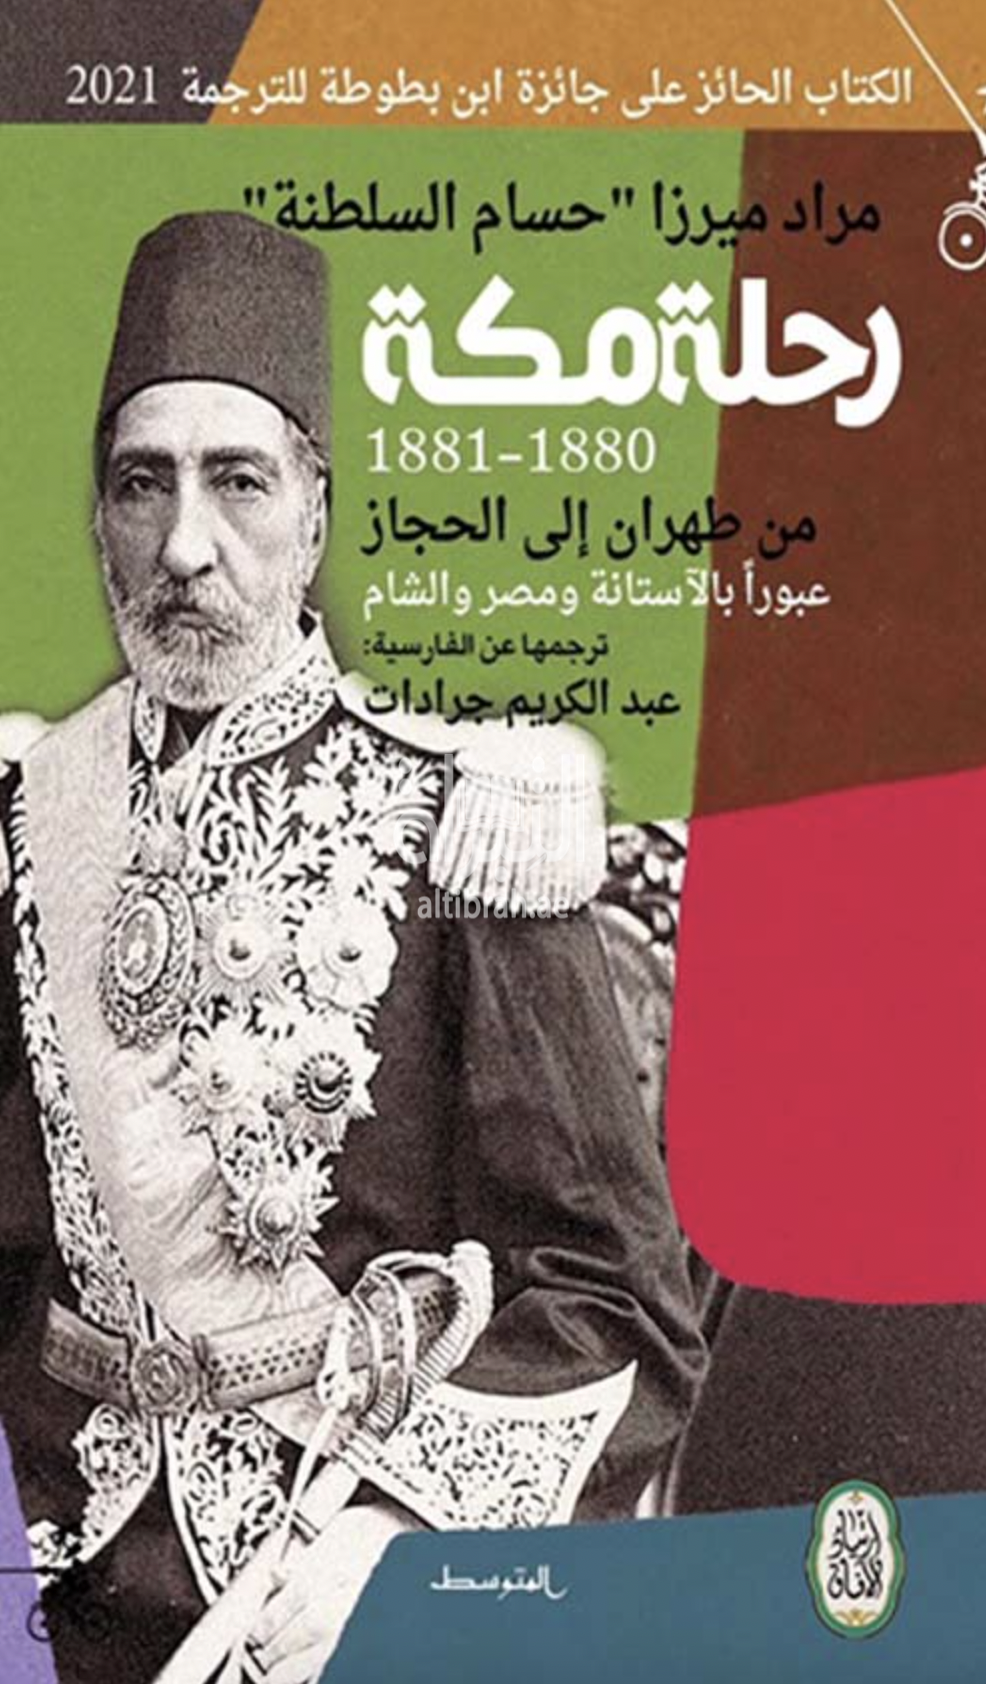 رحلة مكة 1880 - 1881 من طهران إلى الحجاز عبوراً بالآستانة ومصر والشام